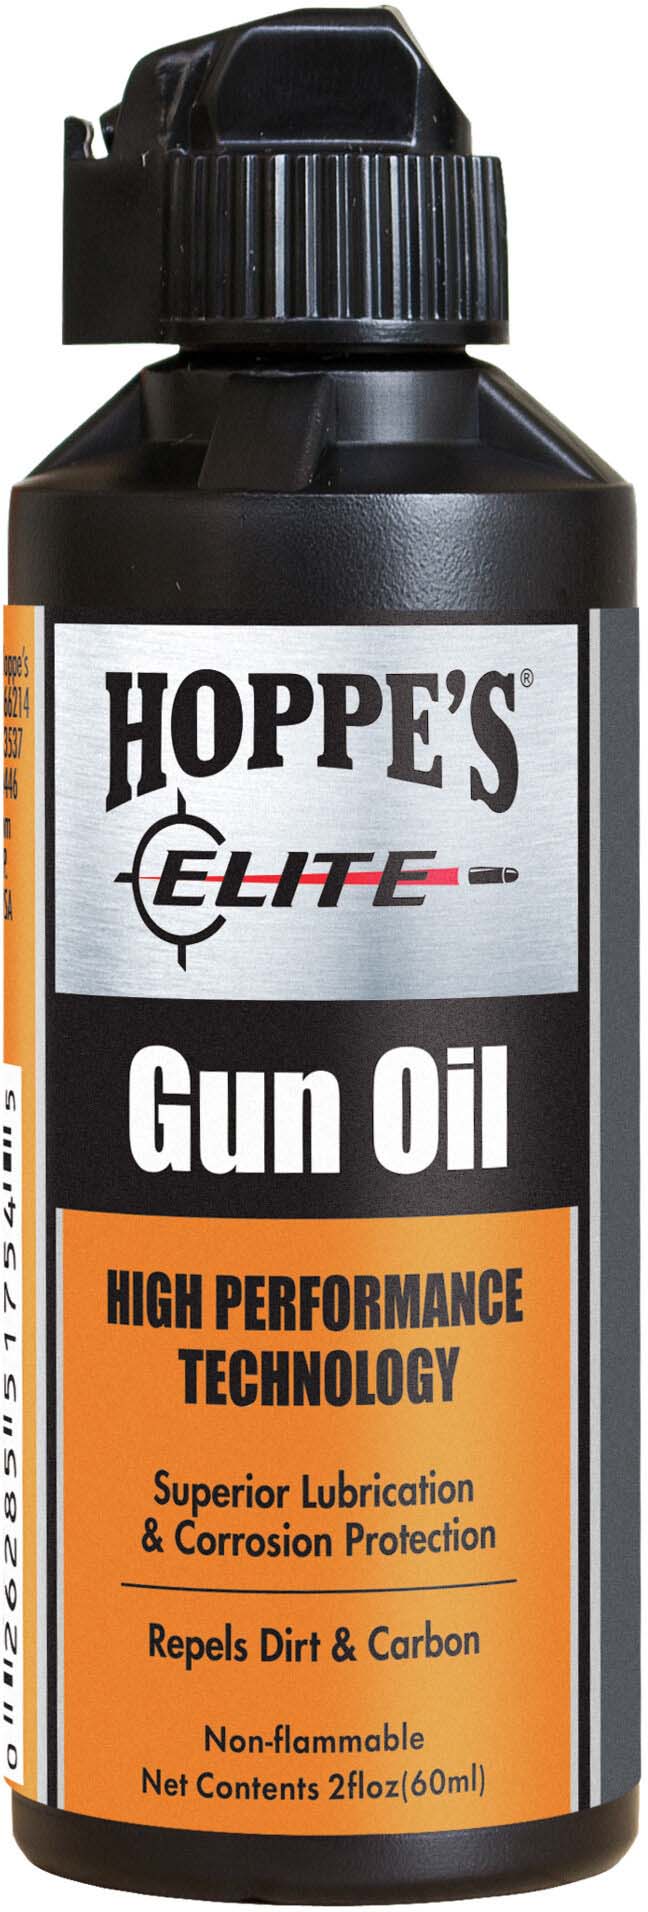 Hoppe's Elite Gun OIl - Larry's Sporting Goods